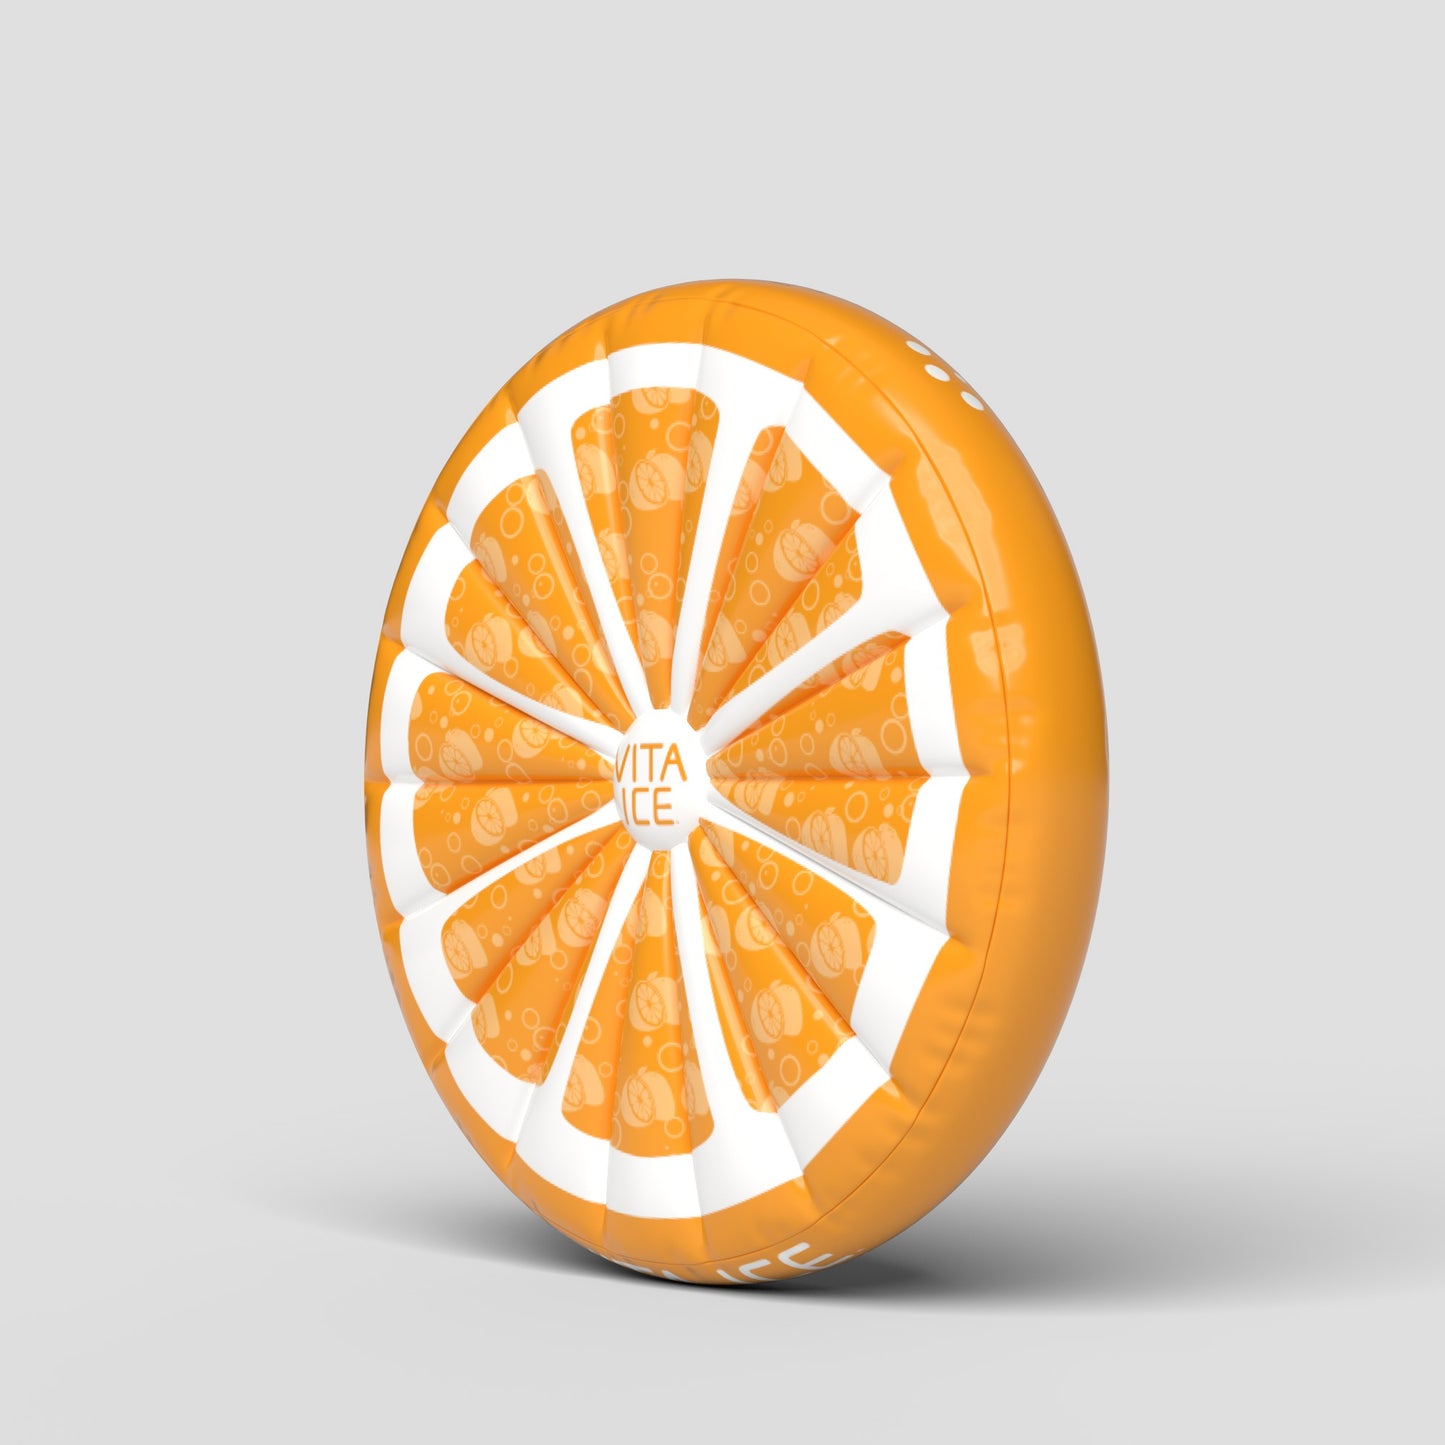 Círculo inflable con rebanada de naranja de 60"